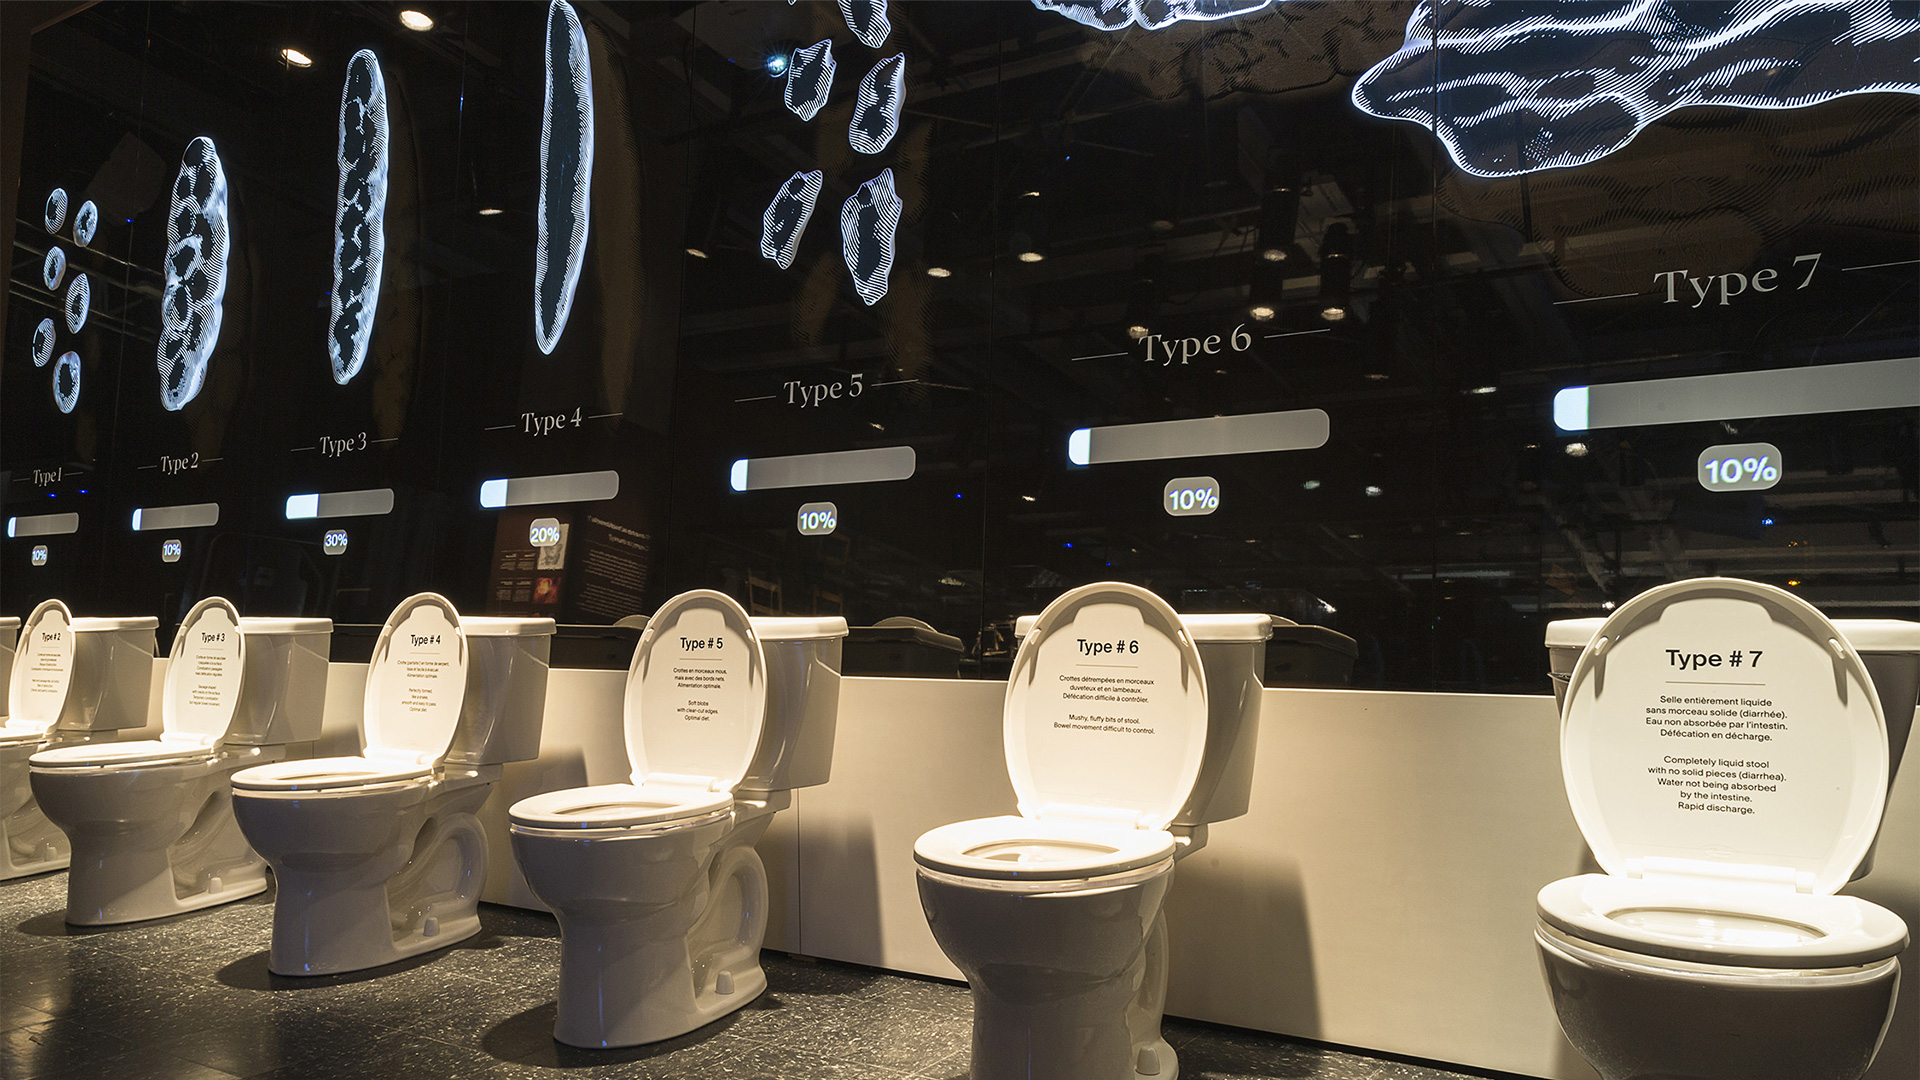 Photographie d'une série de toilettes présentant l'échelle de Bristol dans l'exposition Ô merde!